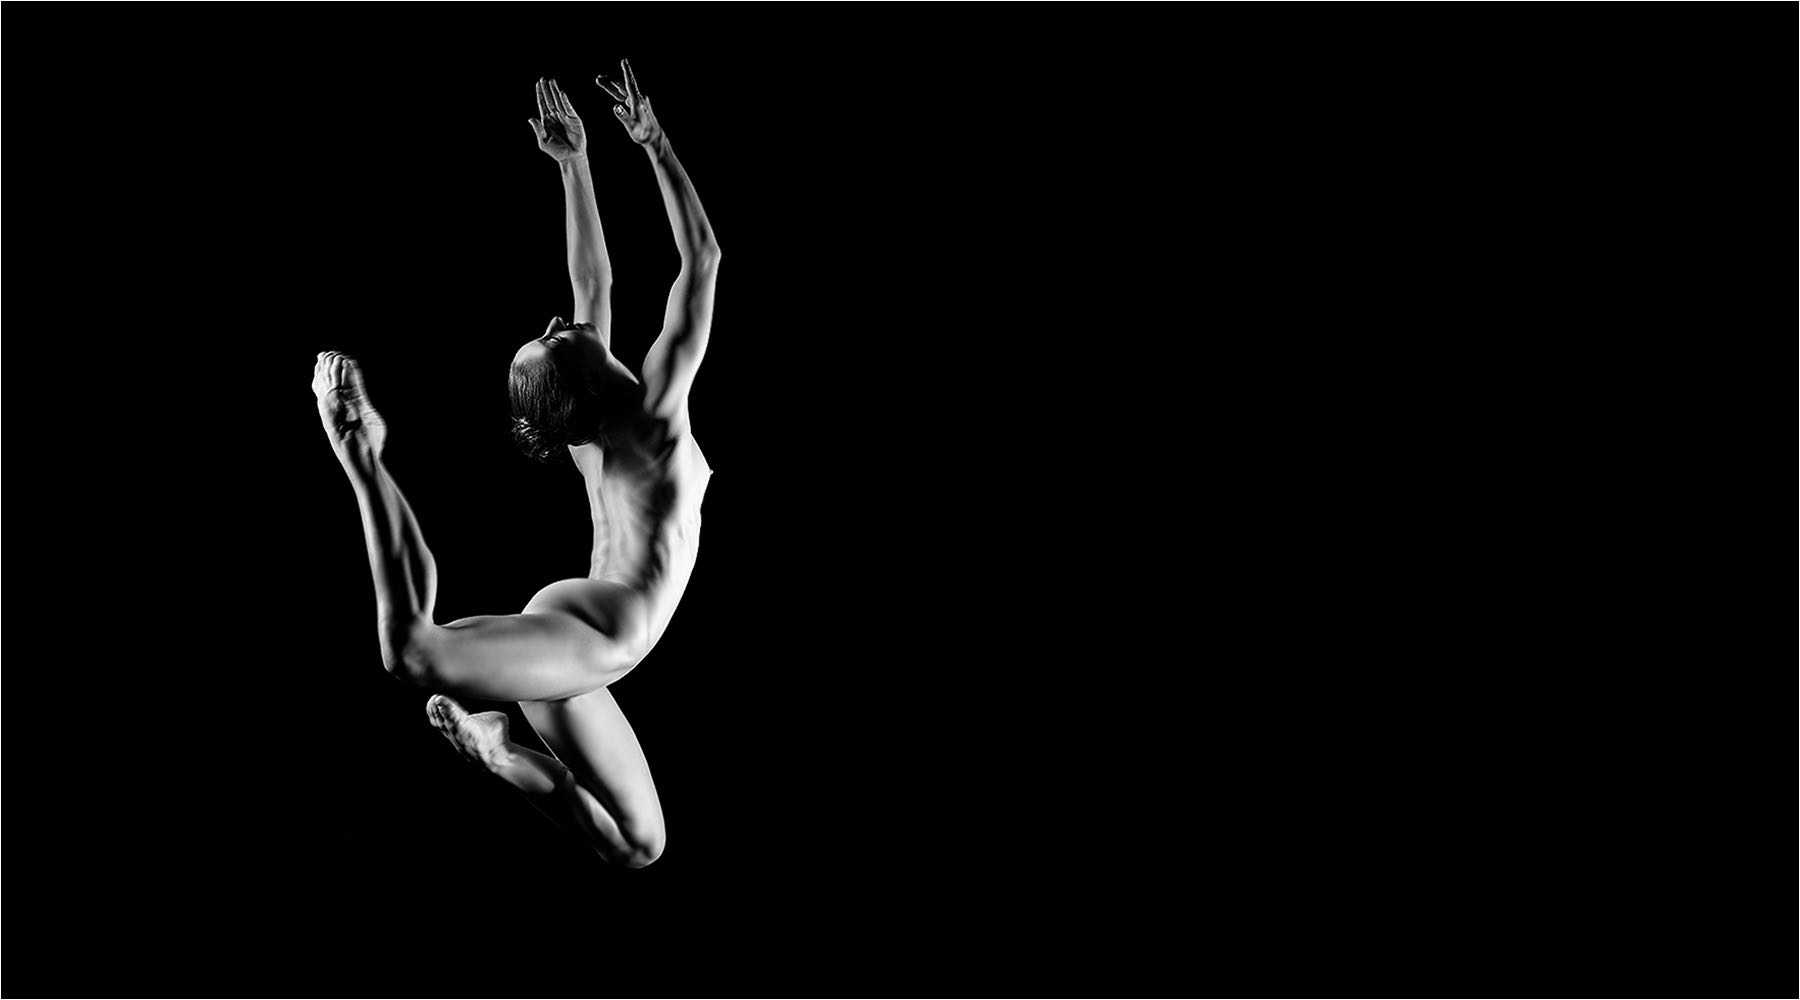  Tanzfotografie. Fliegende Pose einer Tänzerin des Chemnitzer Ballettes im Studio in Chemnitz. Schwarzer Hintergrund und Studioblitzanlage mit Mittelformat aufgenommen. Copyright by Fotostudio Jörg Riethausen 